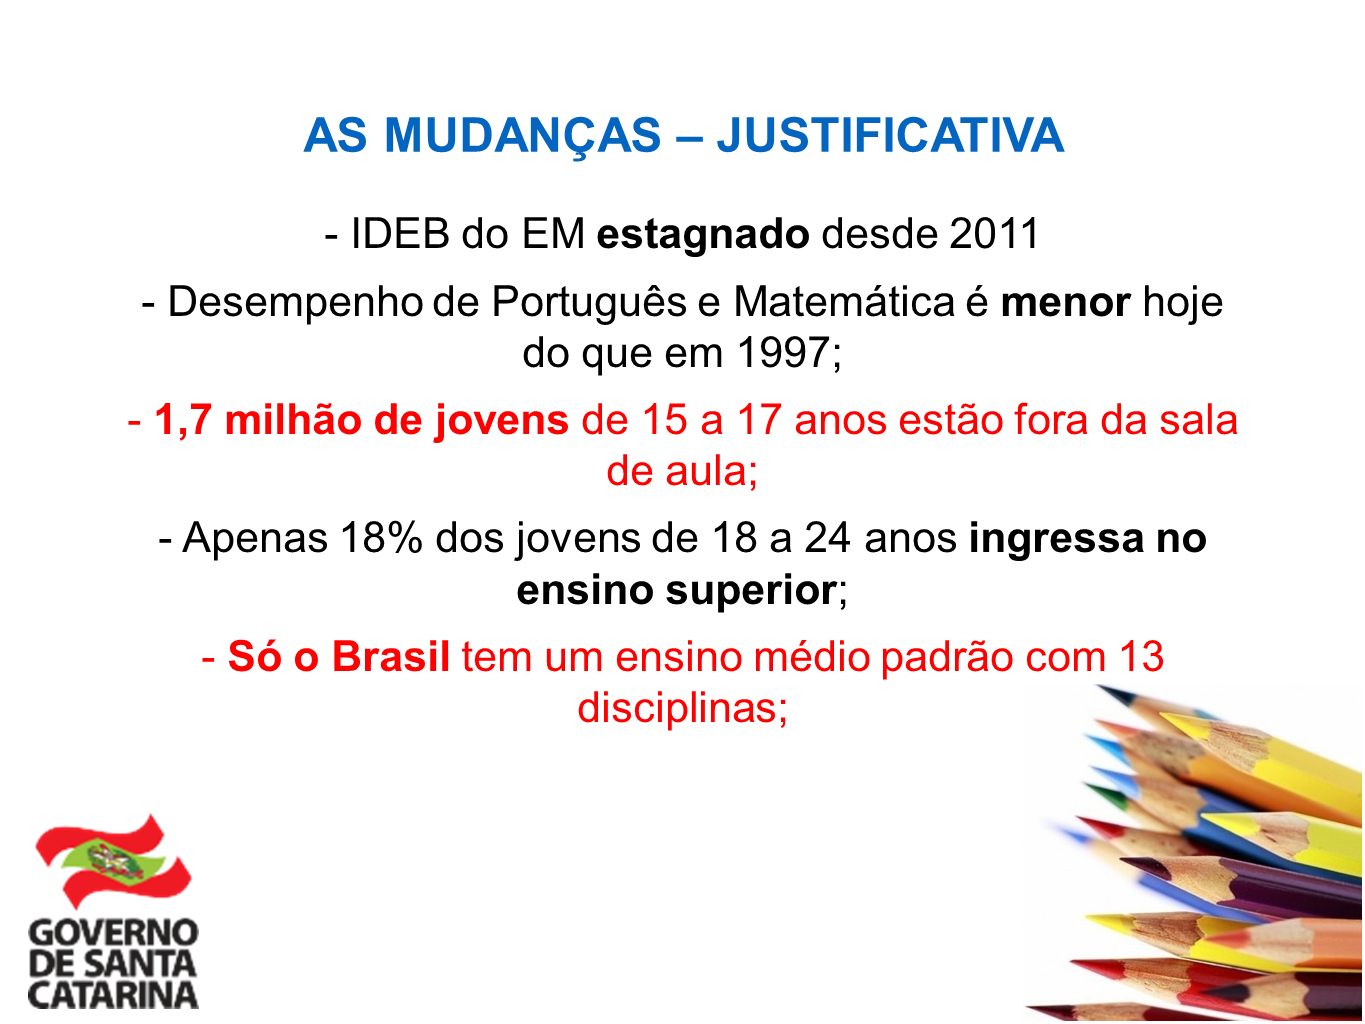 AS MUDANÇAS – JUSTIFICATIVA - IDEB do EM estagnado desde Desempenho de Português e Matemática é menor hoje do que em 1997; - 1,7 milhão de jovens de 15 a 17 anos estão fora da sala de aula; - Apenas 18% dos jovens de 18 a 24 anos ingressa no ensino superior; - Só o Brasil tem um ensino médio padrão com 13 disciplinas;